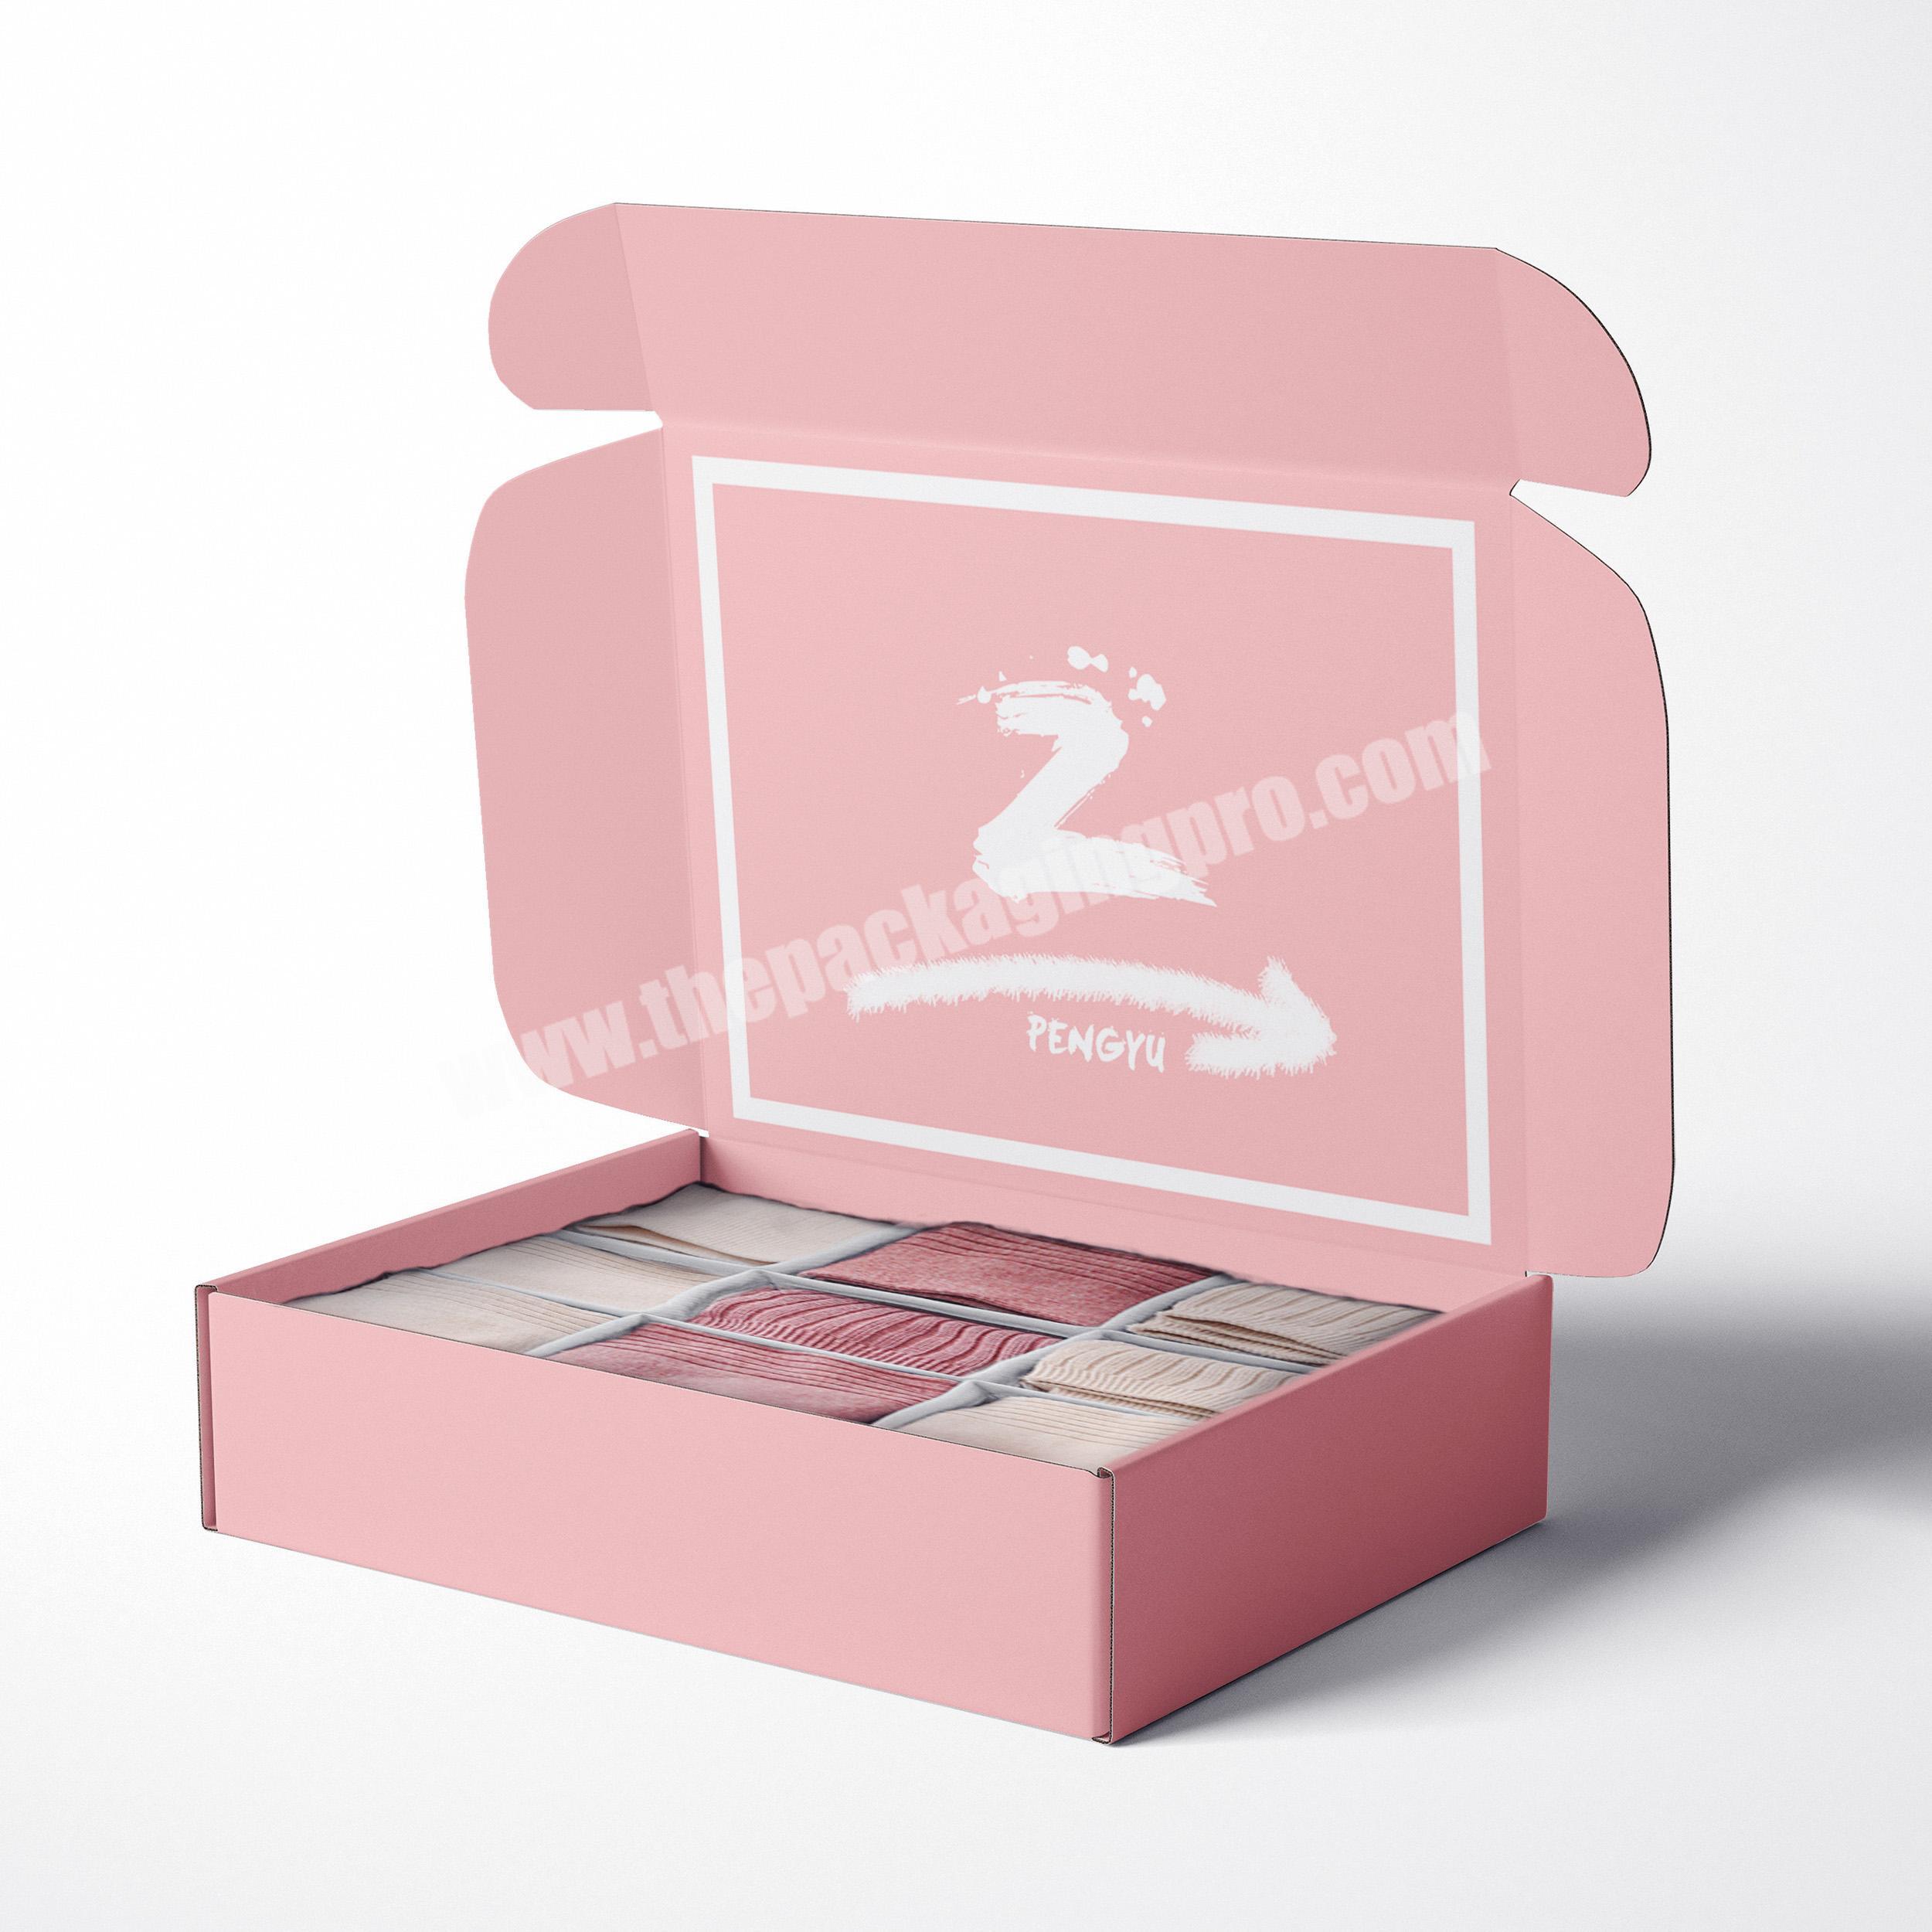 Best Quality CustMailer Box Skin Care Shipping Box Custom Logo Cardboard Mailer Box